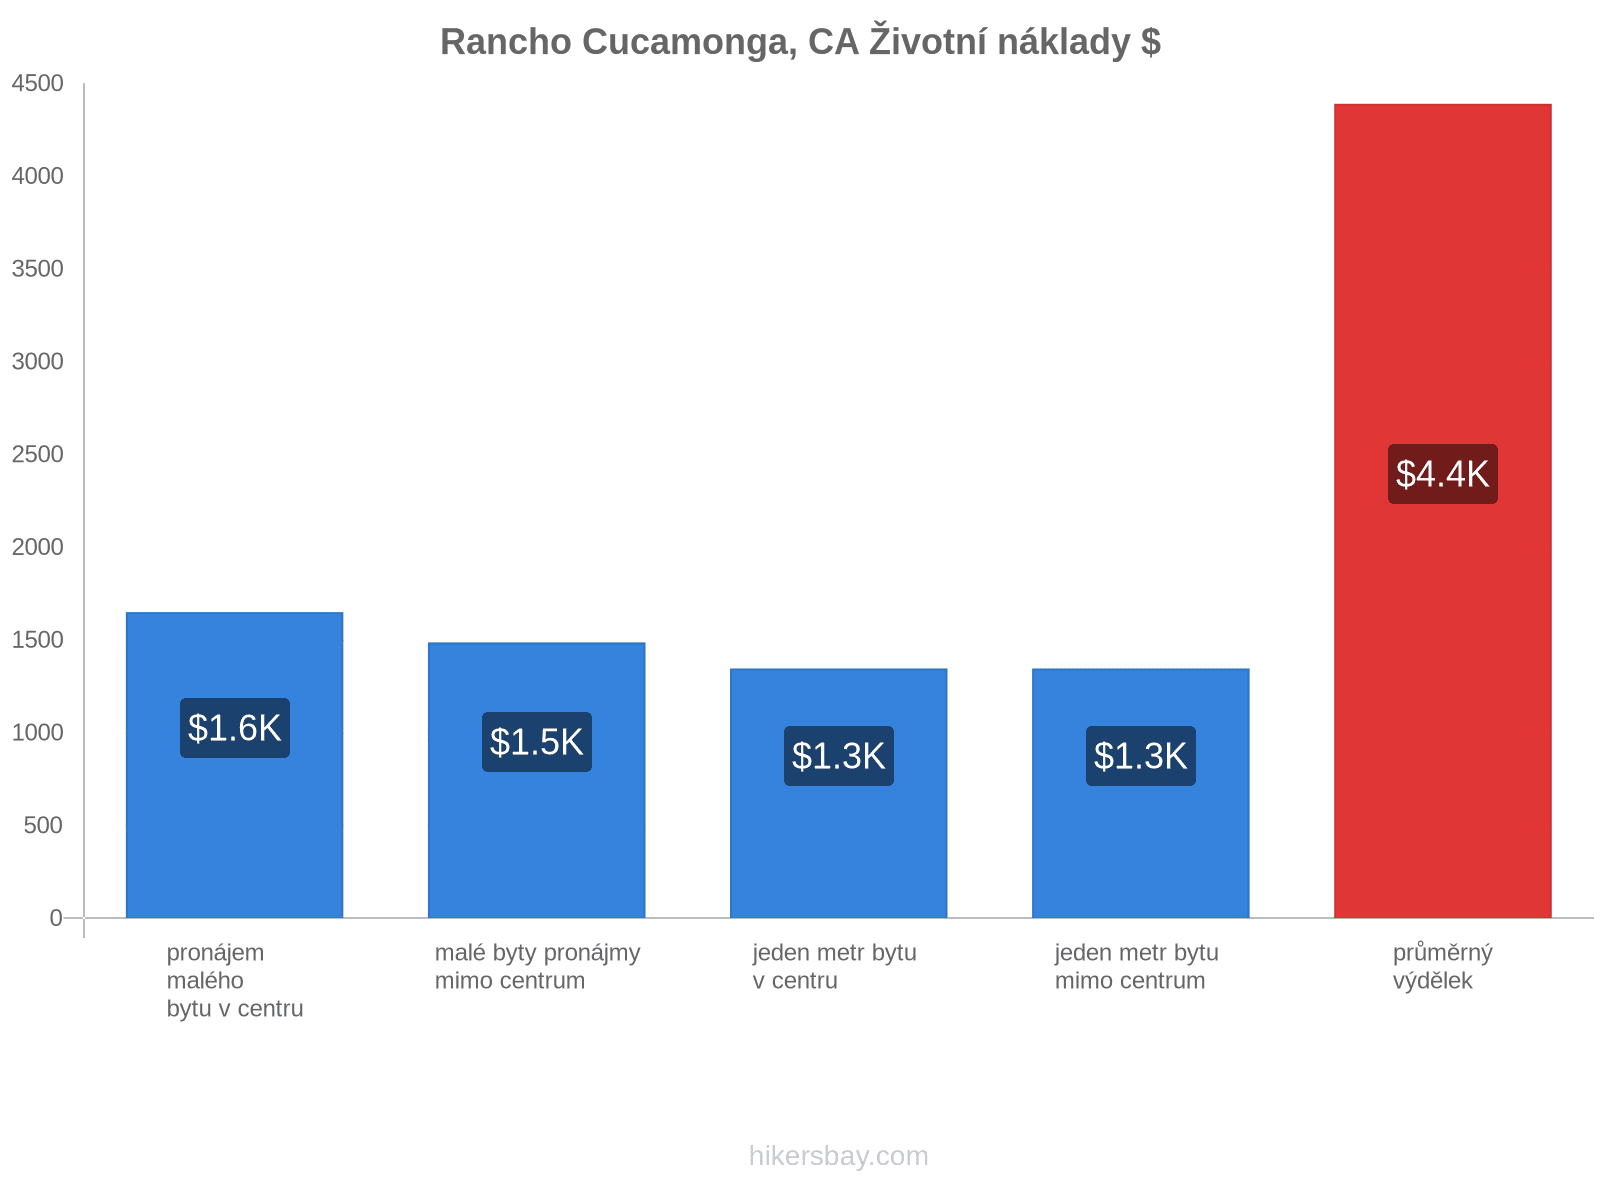 Rancho Cucamonga, CA životní náklady hikersbay.com